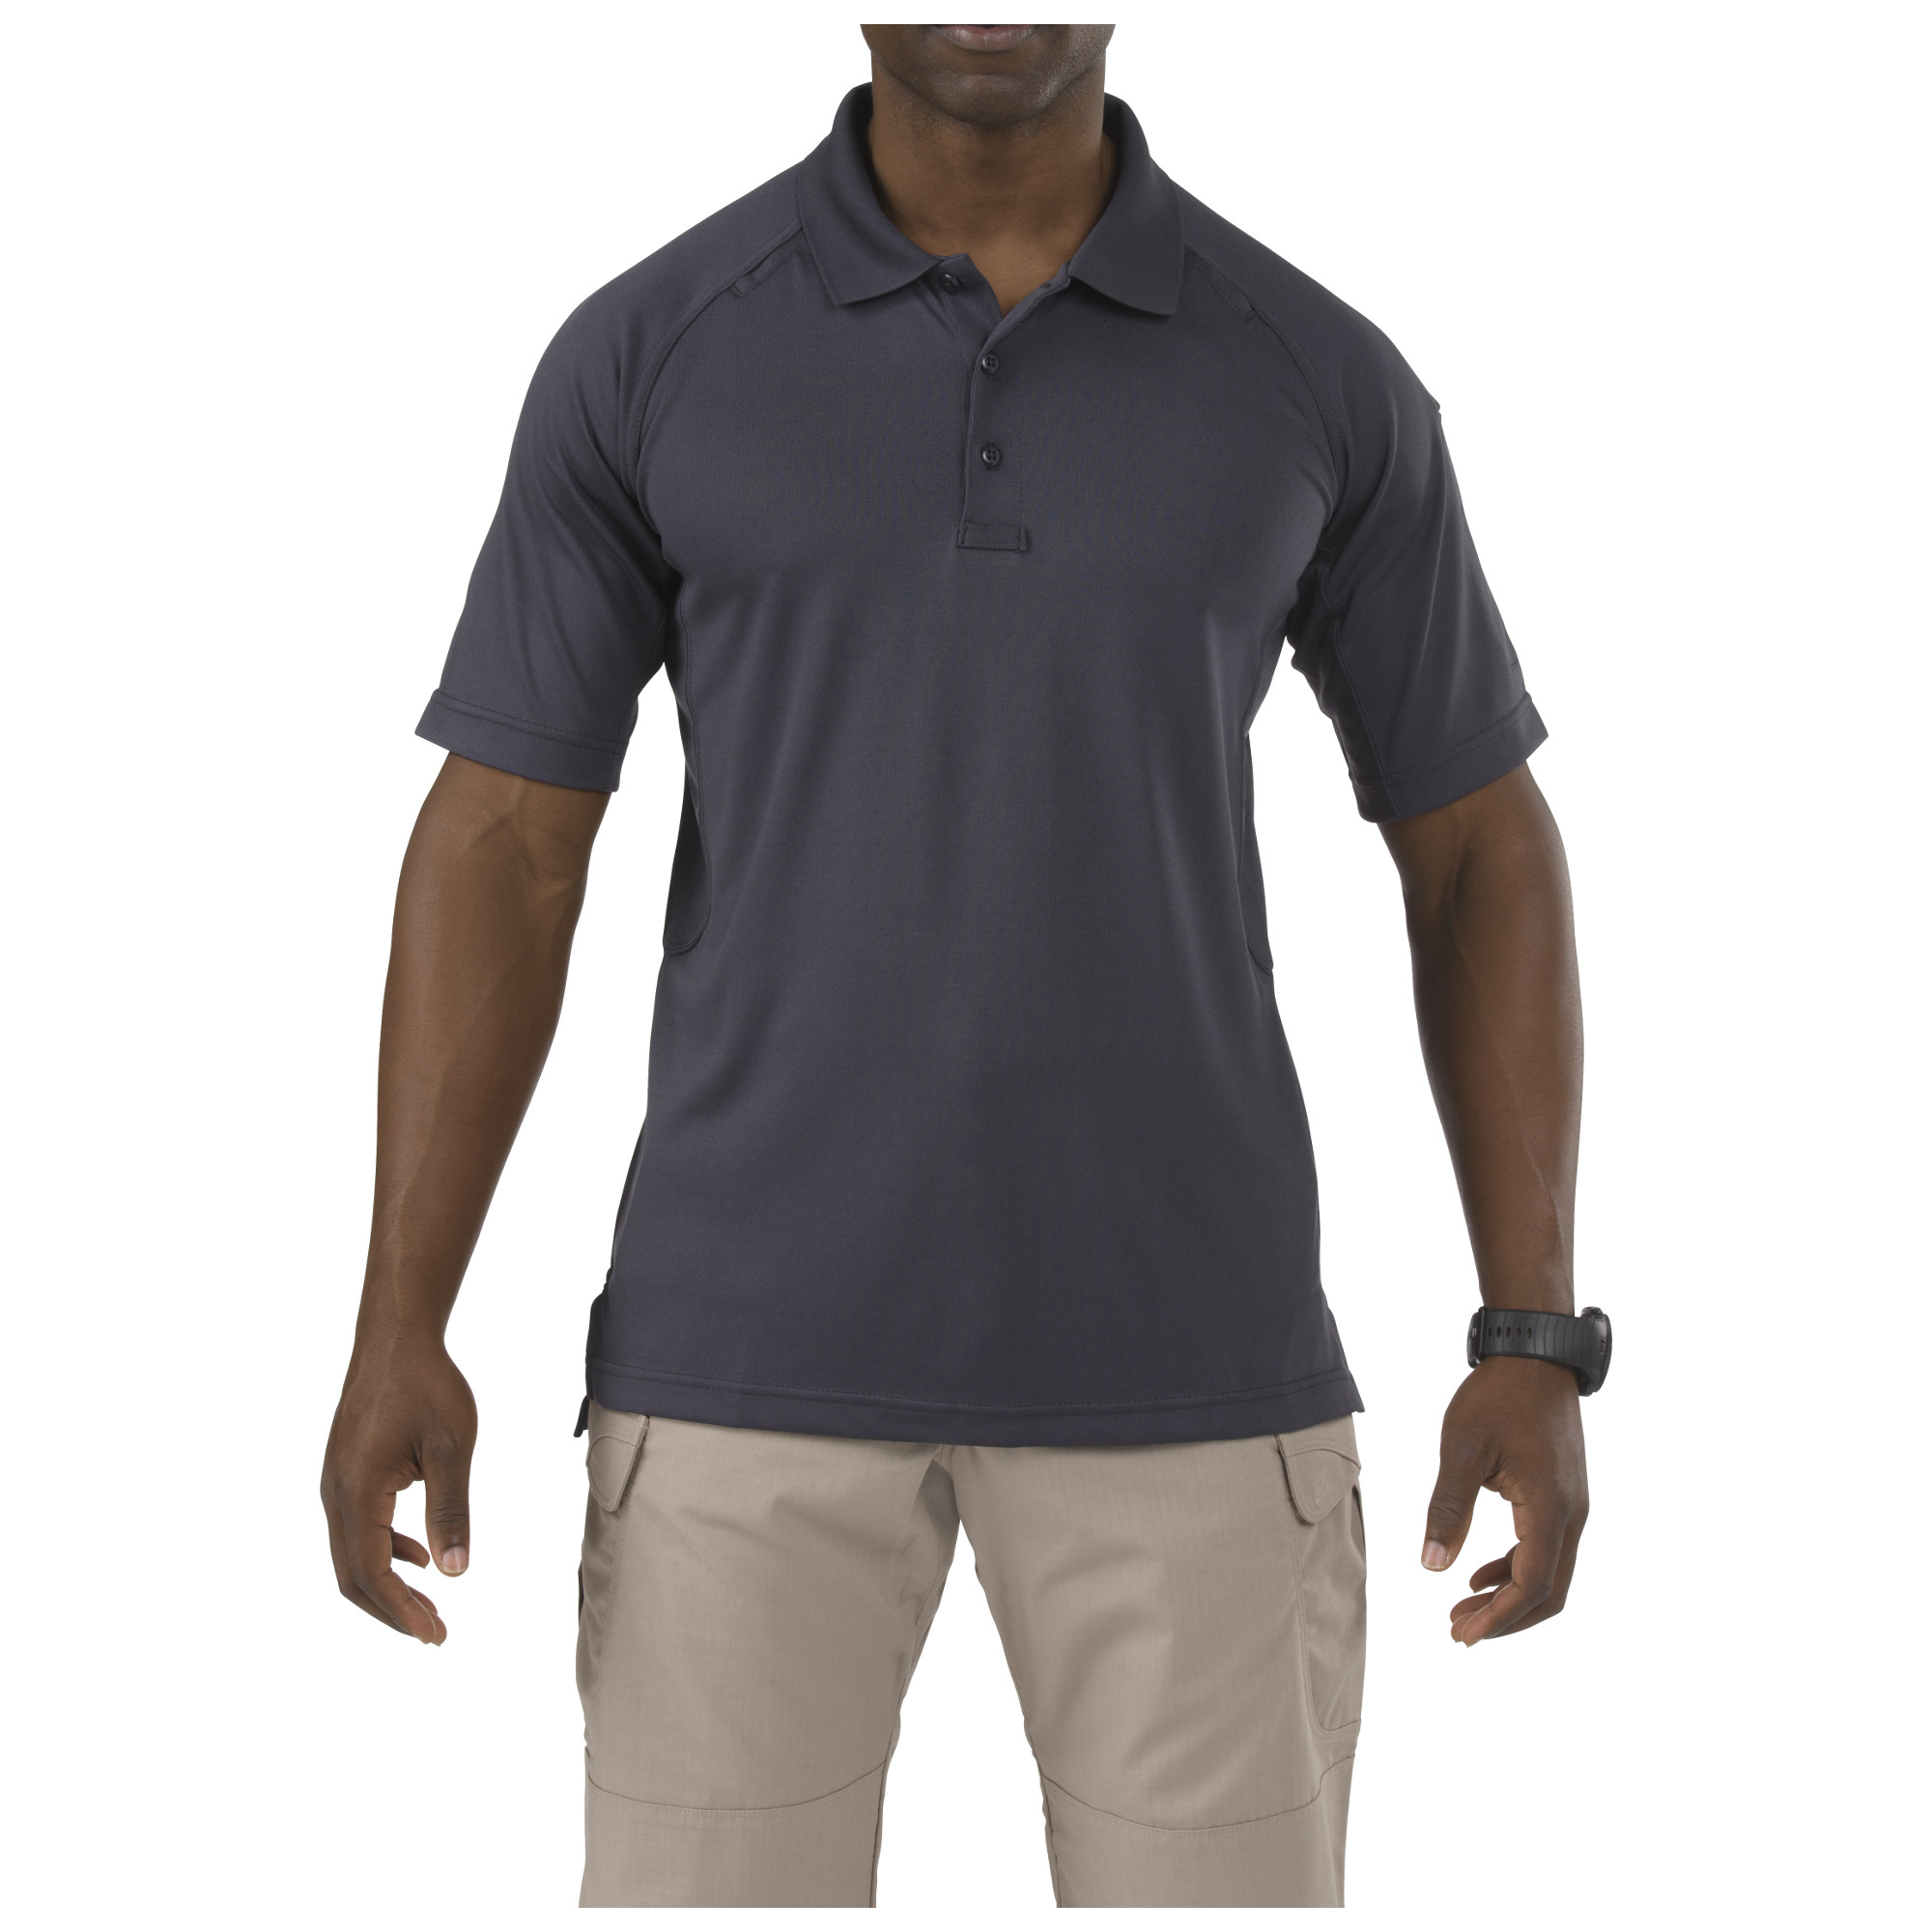 5.11 택티컬 퍼포먼스 폴로 반팔 셔츠 (차콜) - Performance Polo Short Shirt (Charcoal)